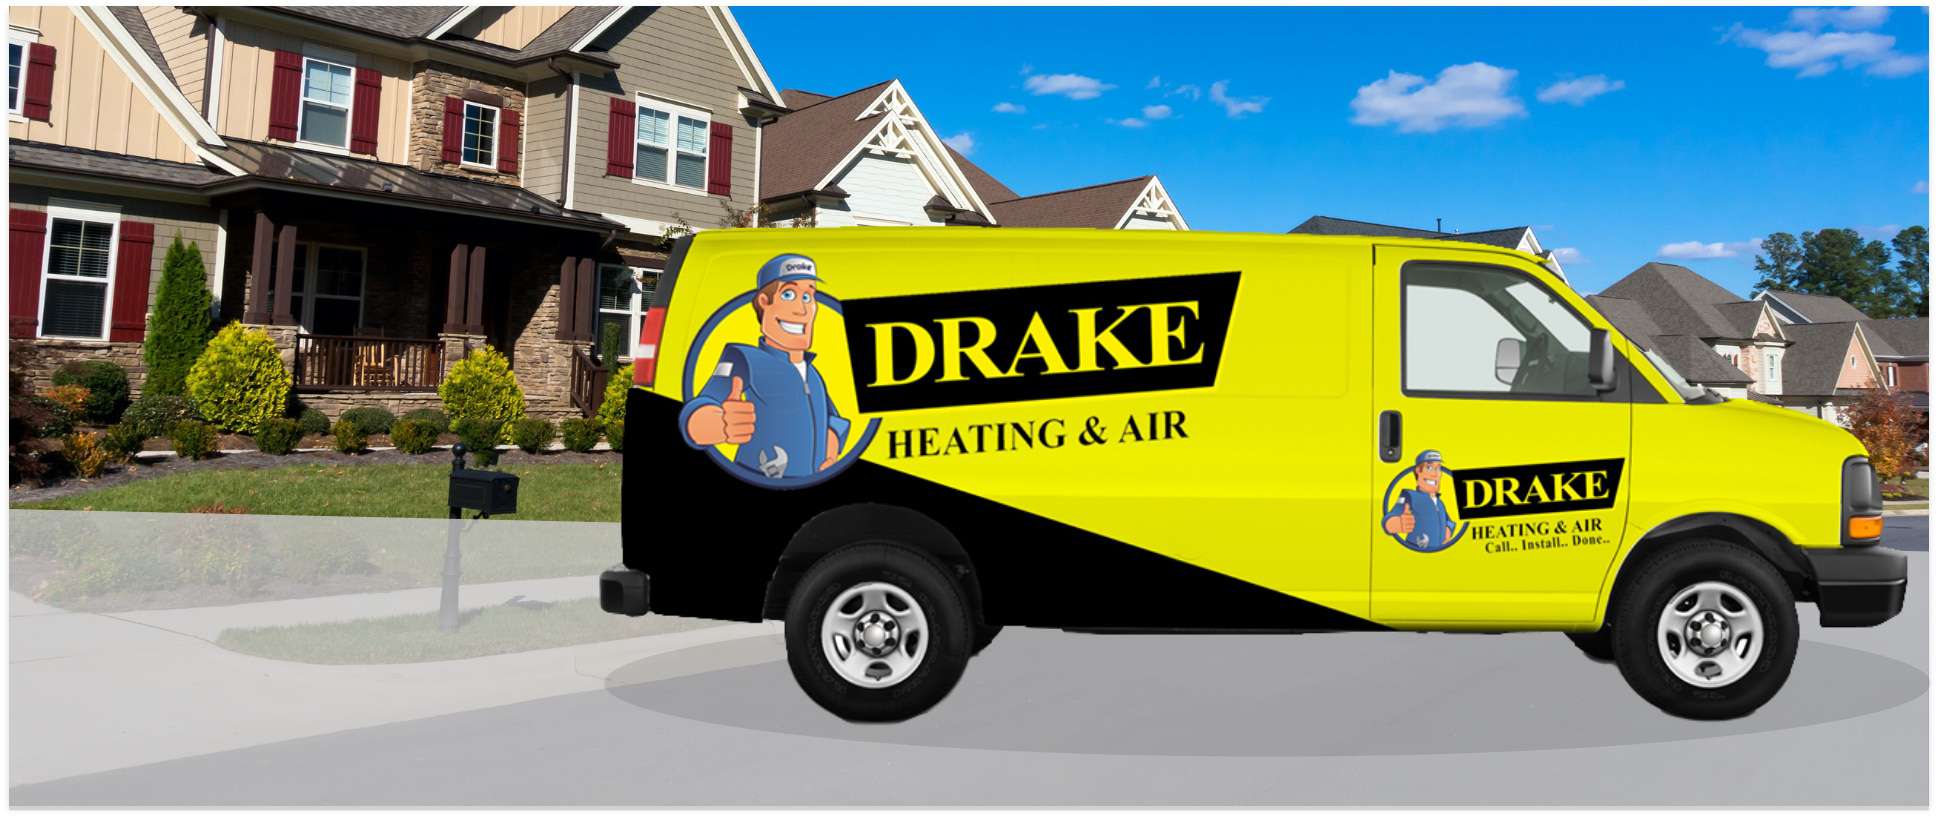 Drake Heating And Air Van In Neighborhood